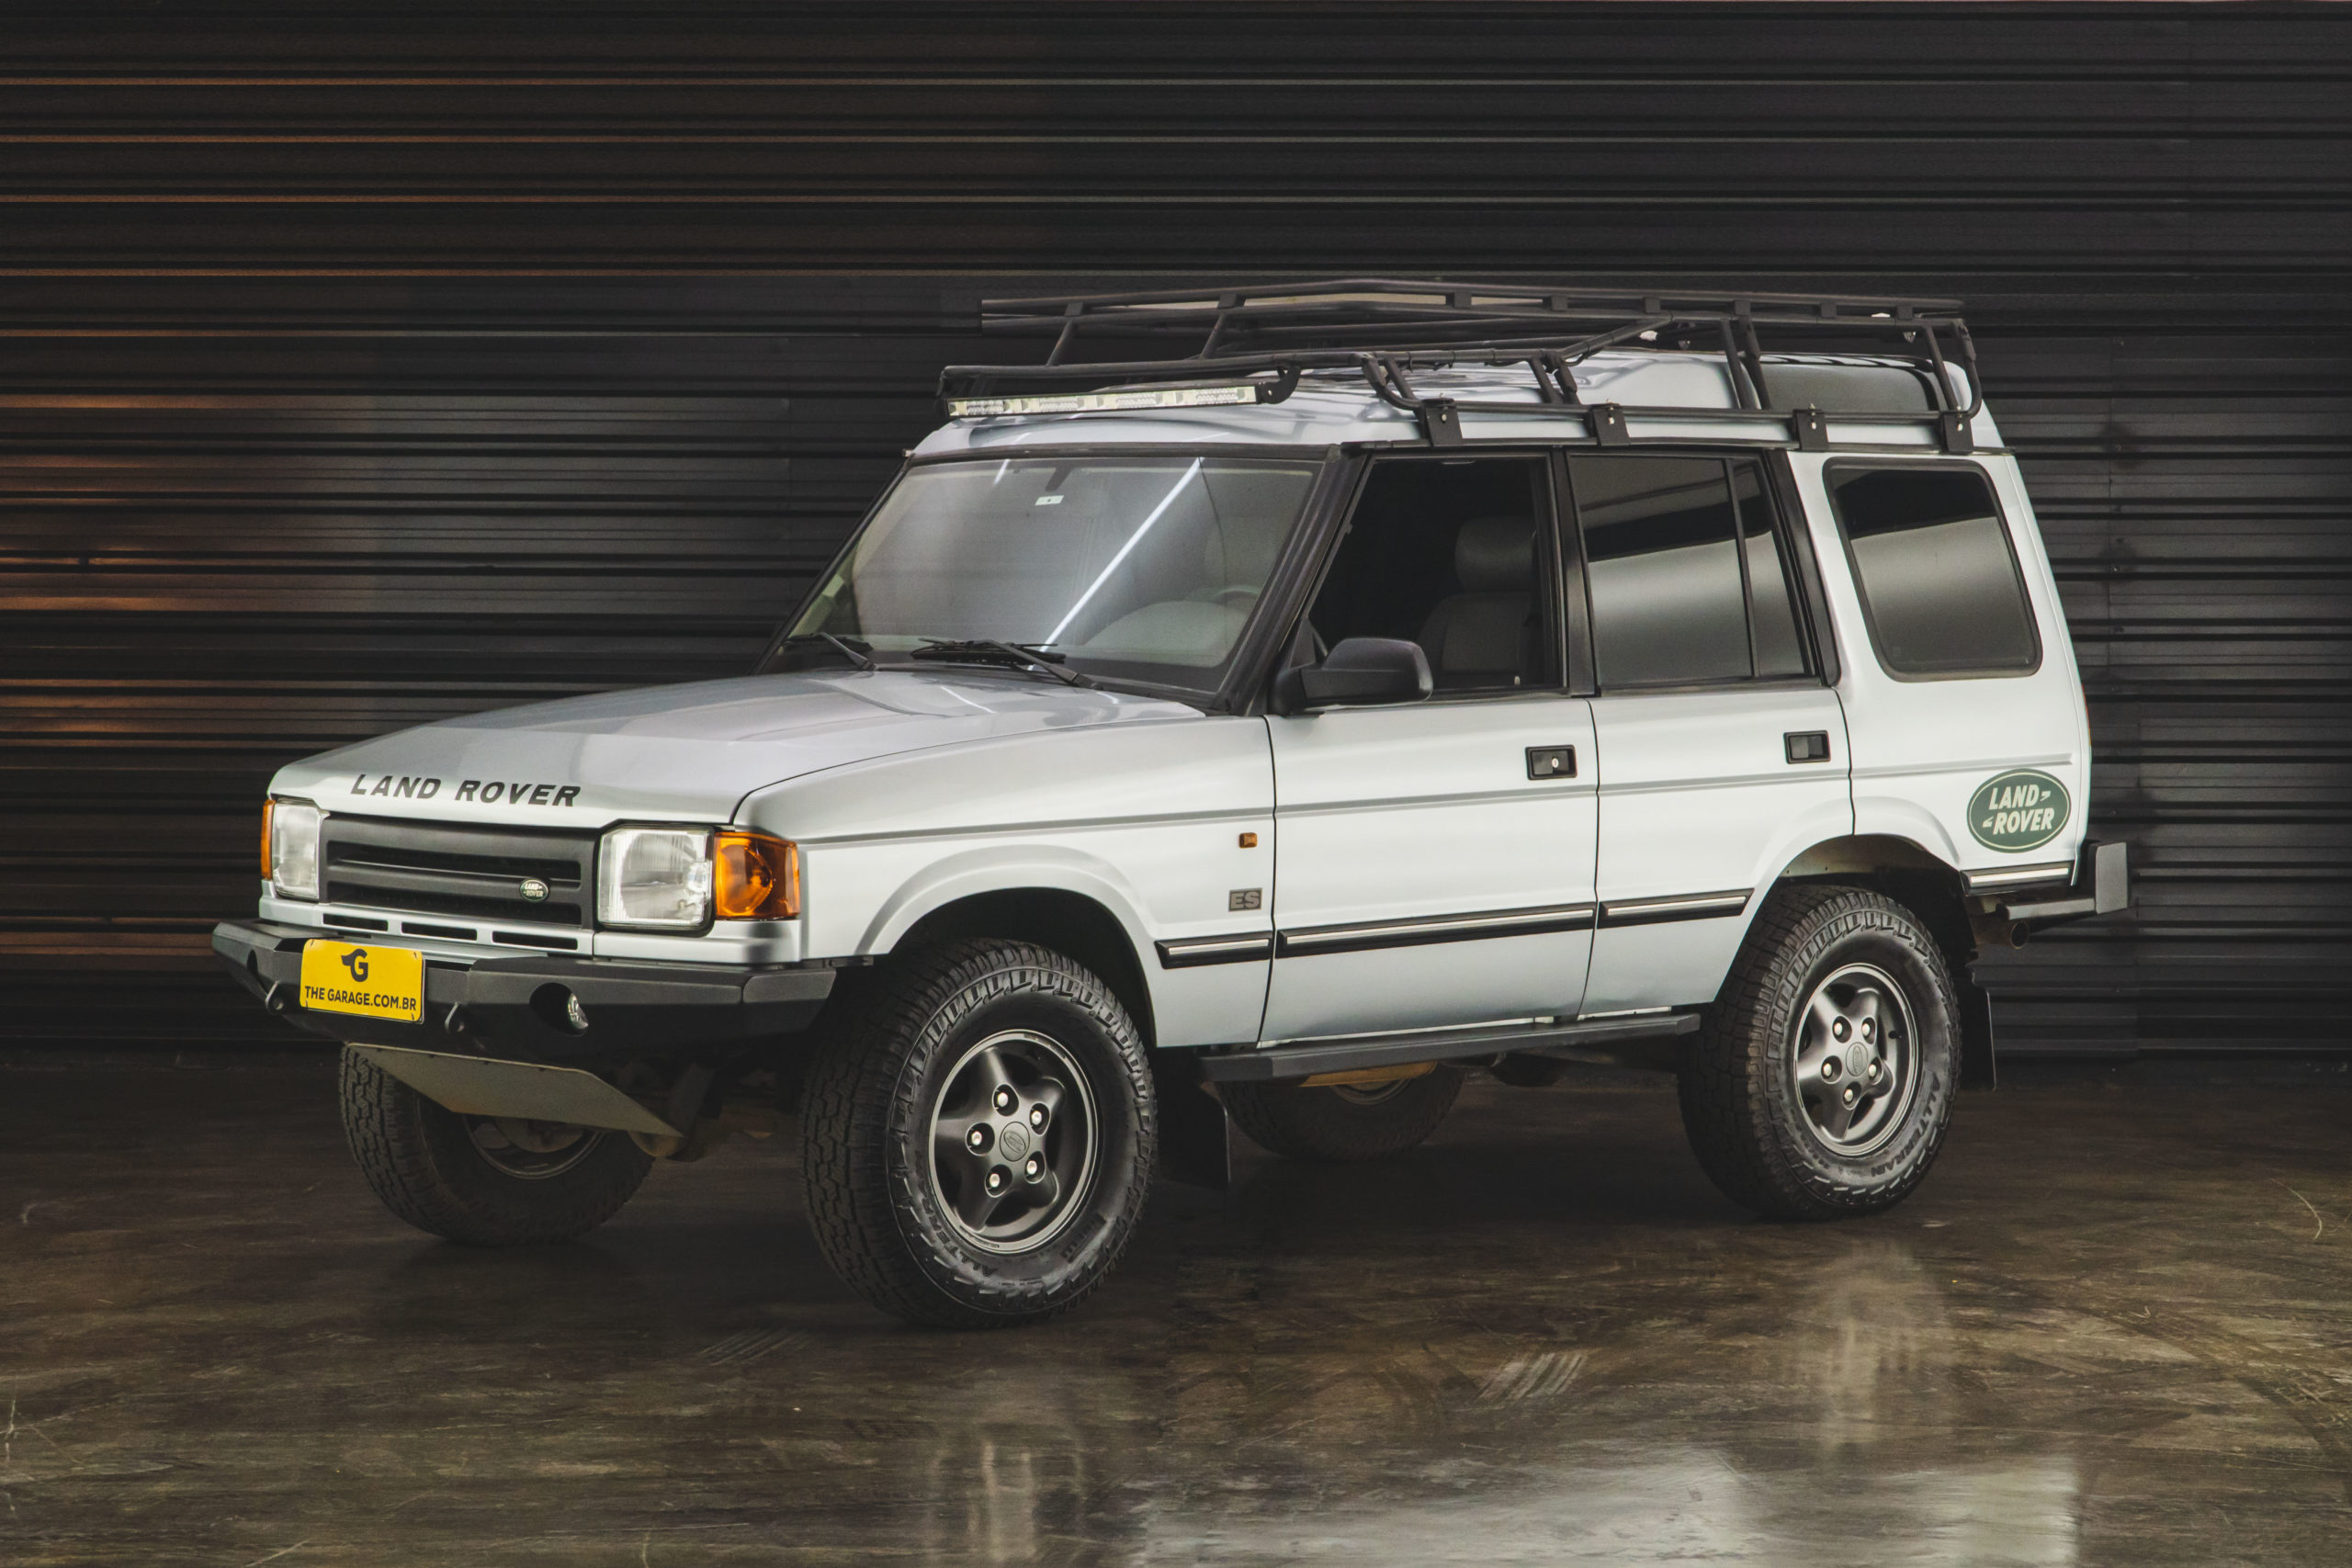 1997 Land Rover discovery a venda the garage